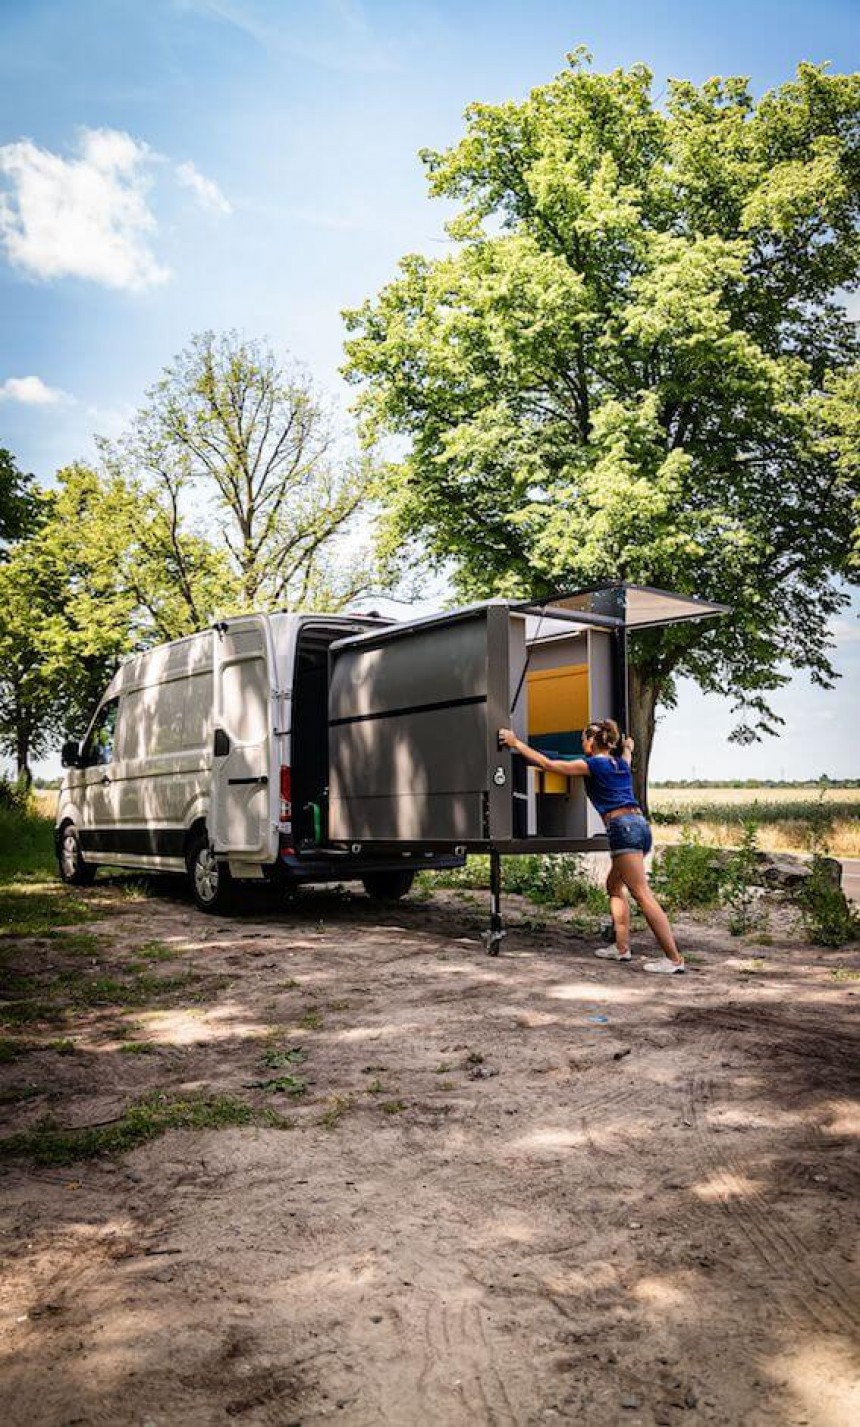 Moduł PlugVan Camper zamienia każdy pusty van w przyczepę kempingową w mniej niż 5 minut i bez modyfikacji pojazdu